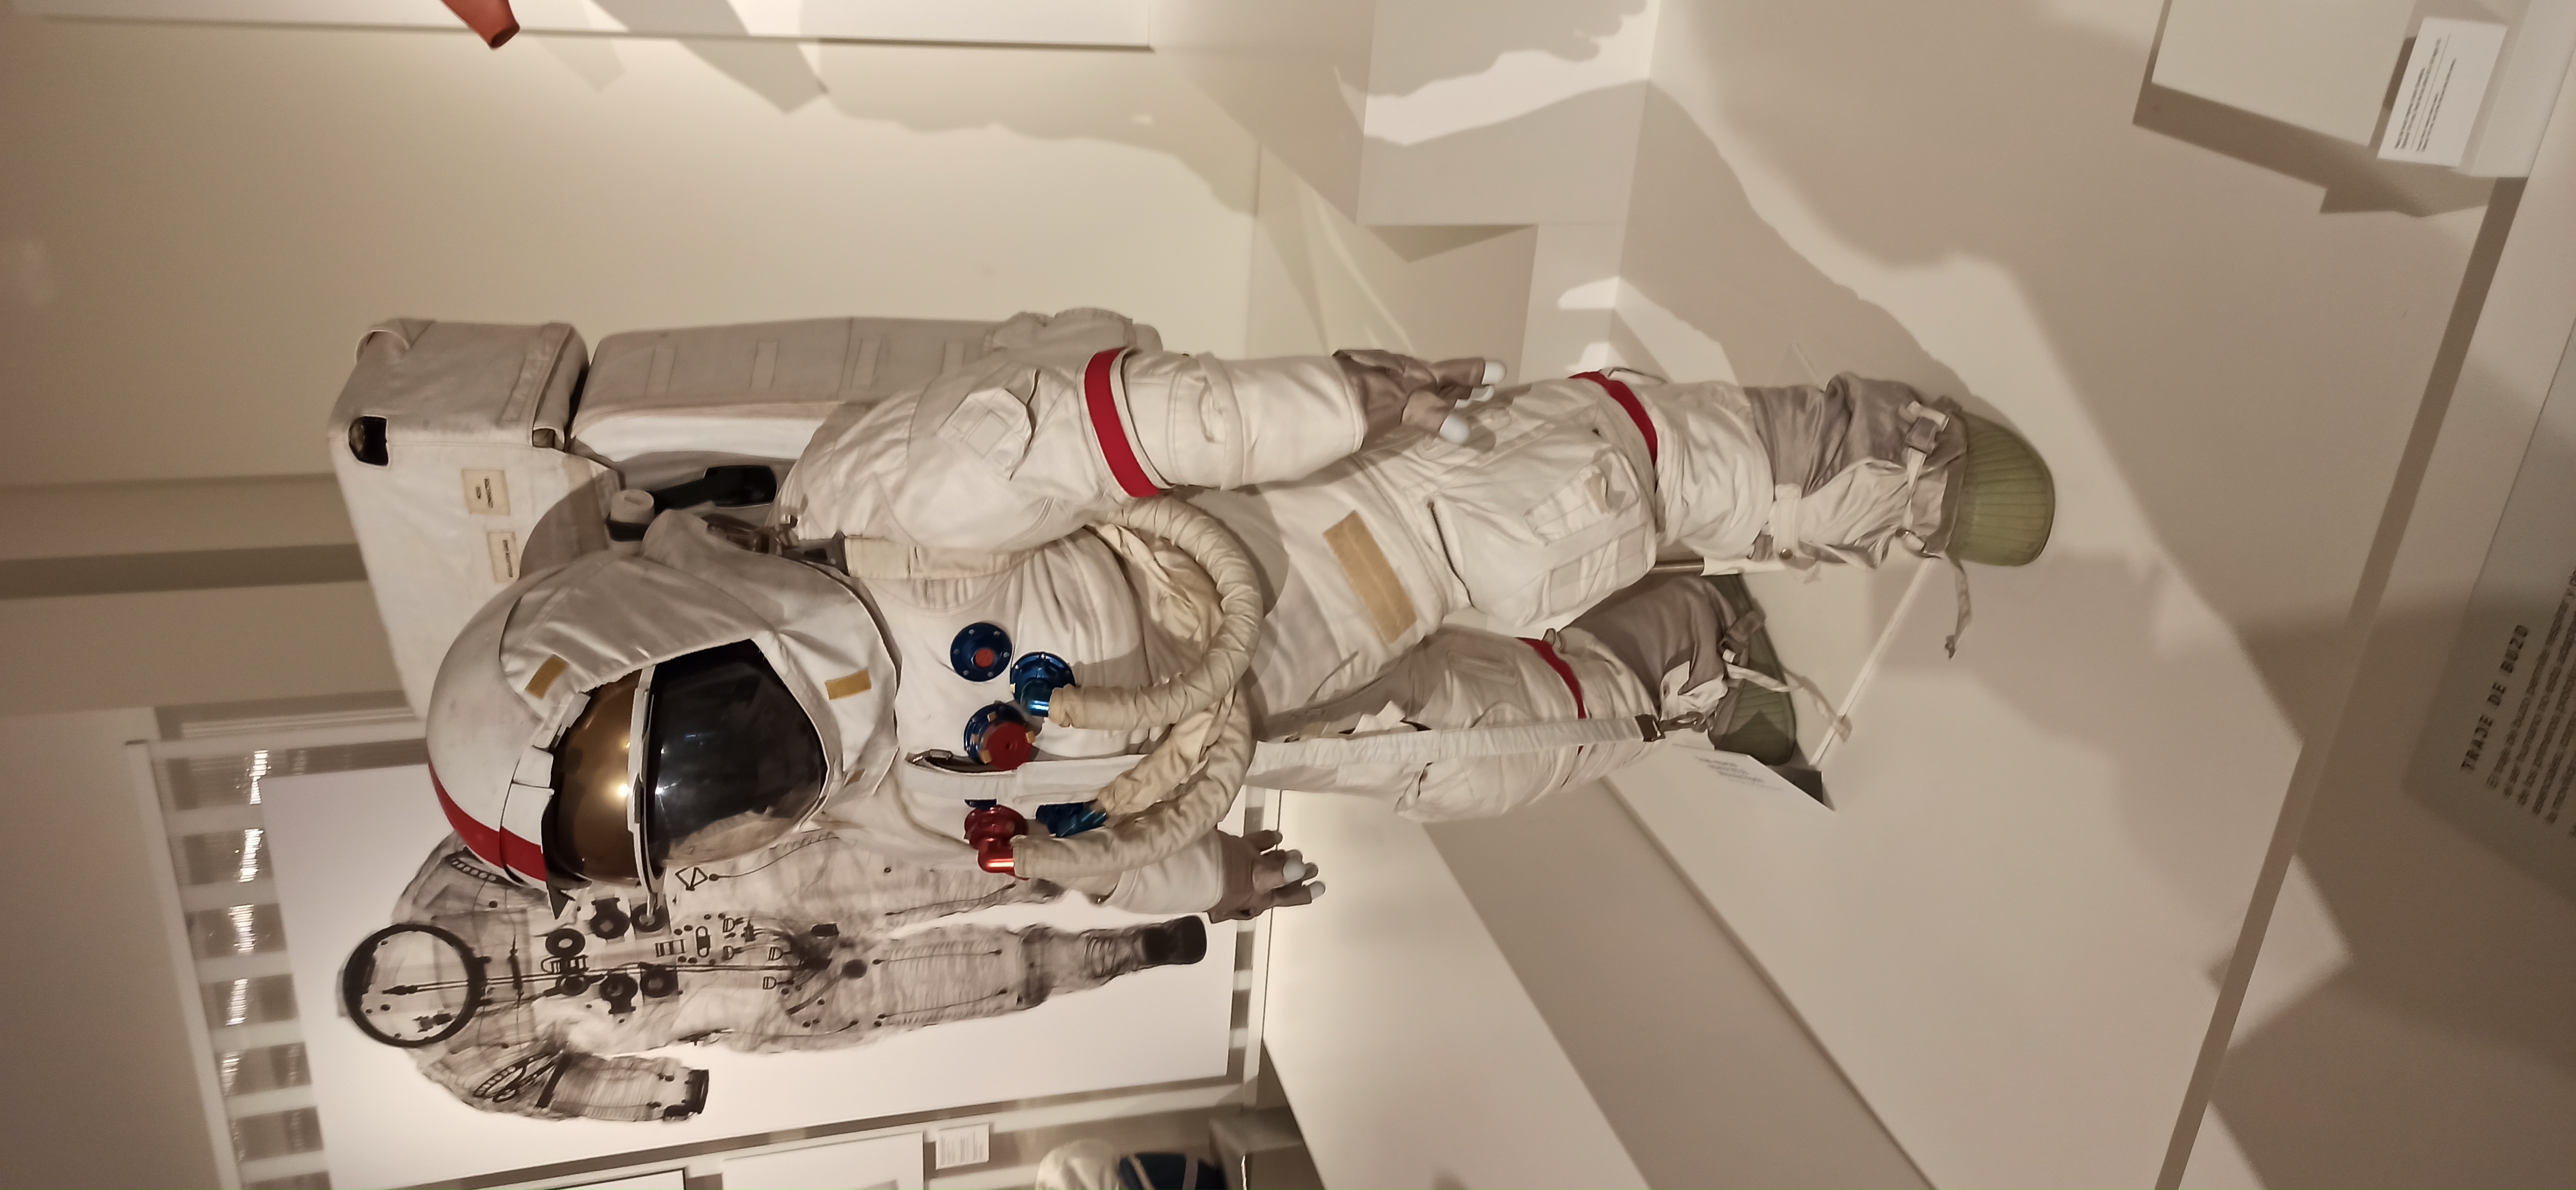 Se muestra una imagen de un astronauta